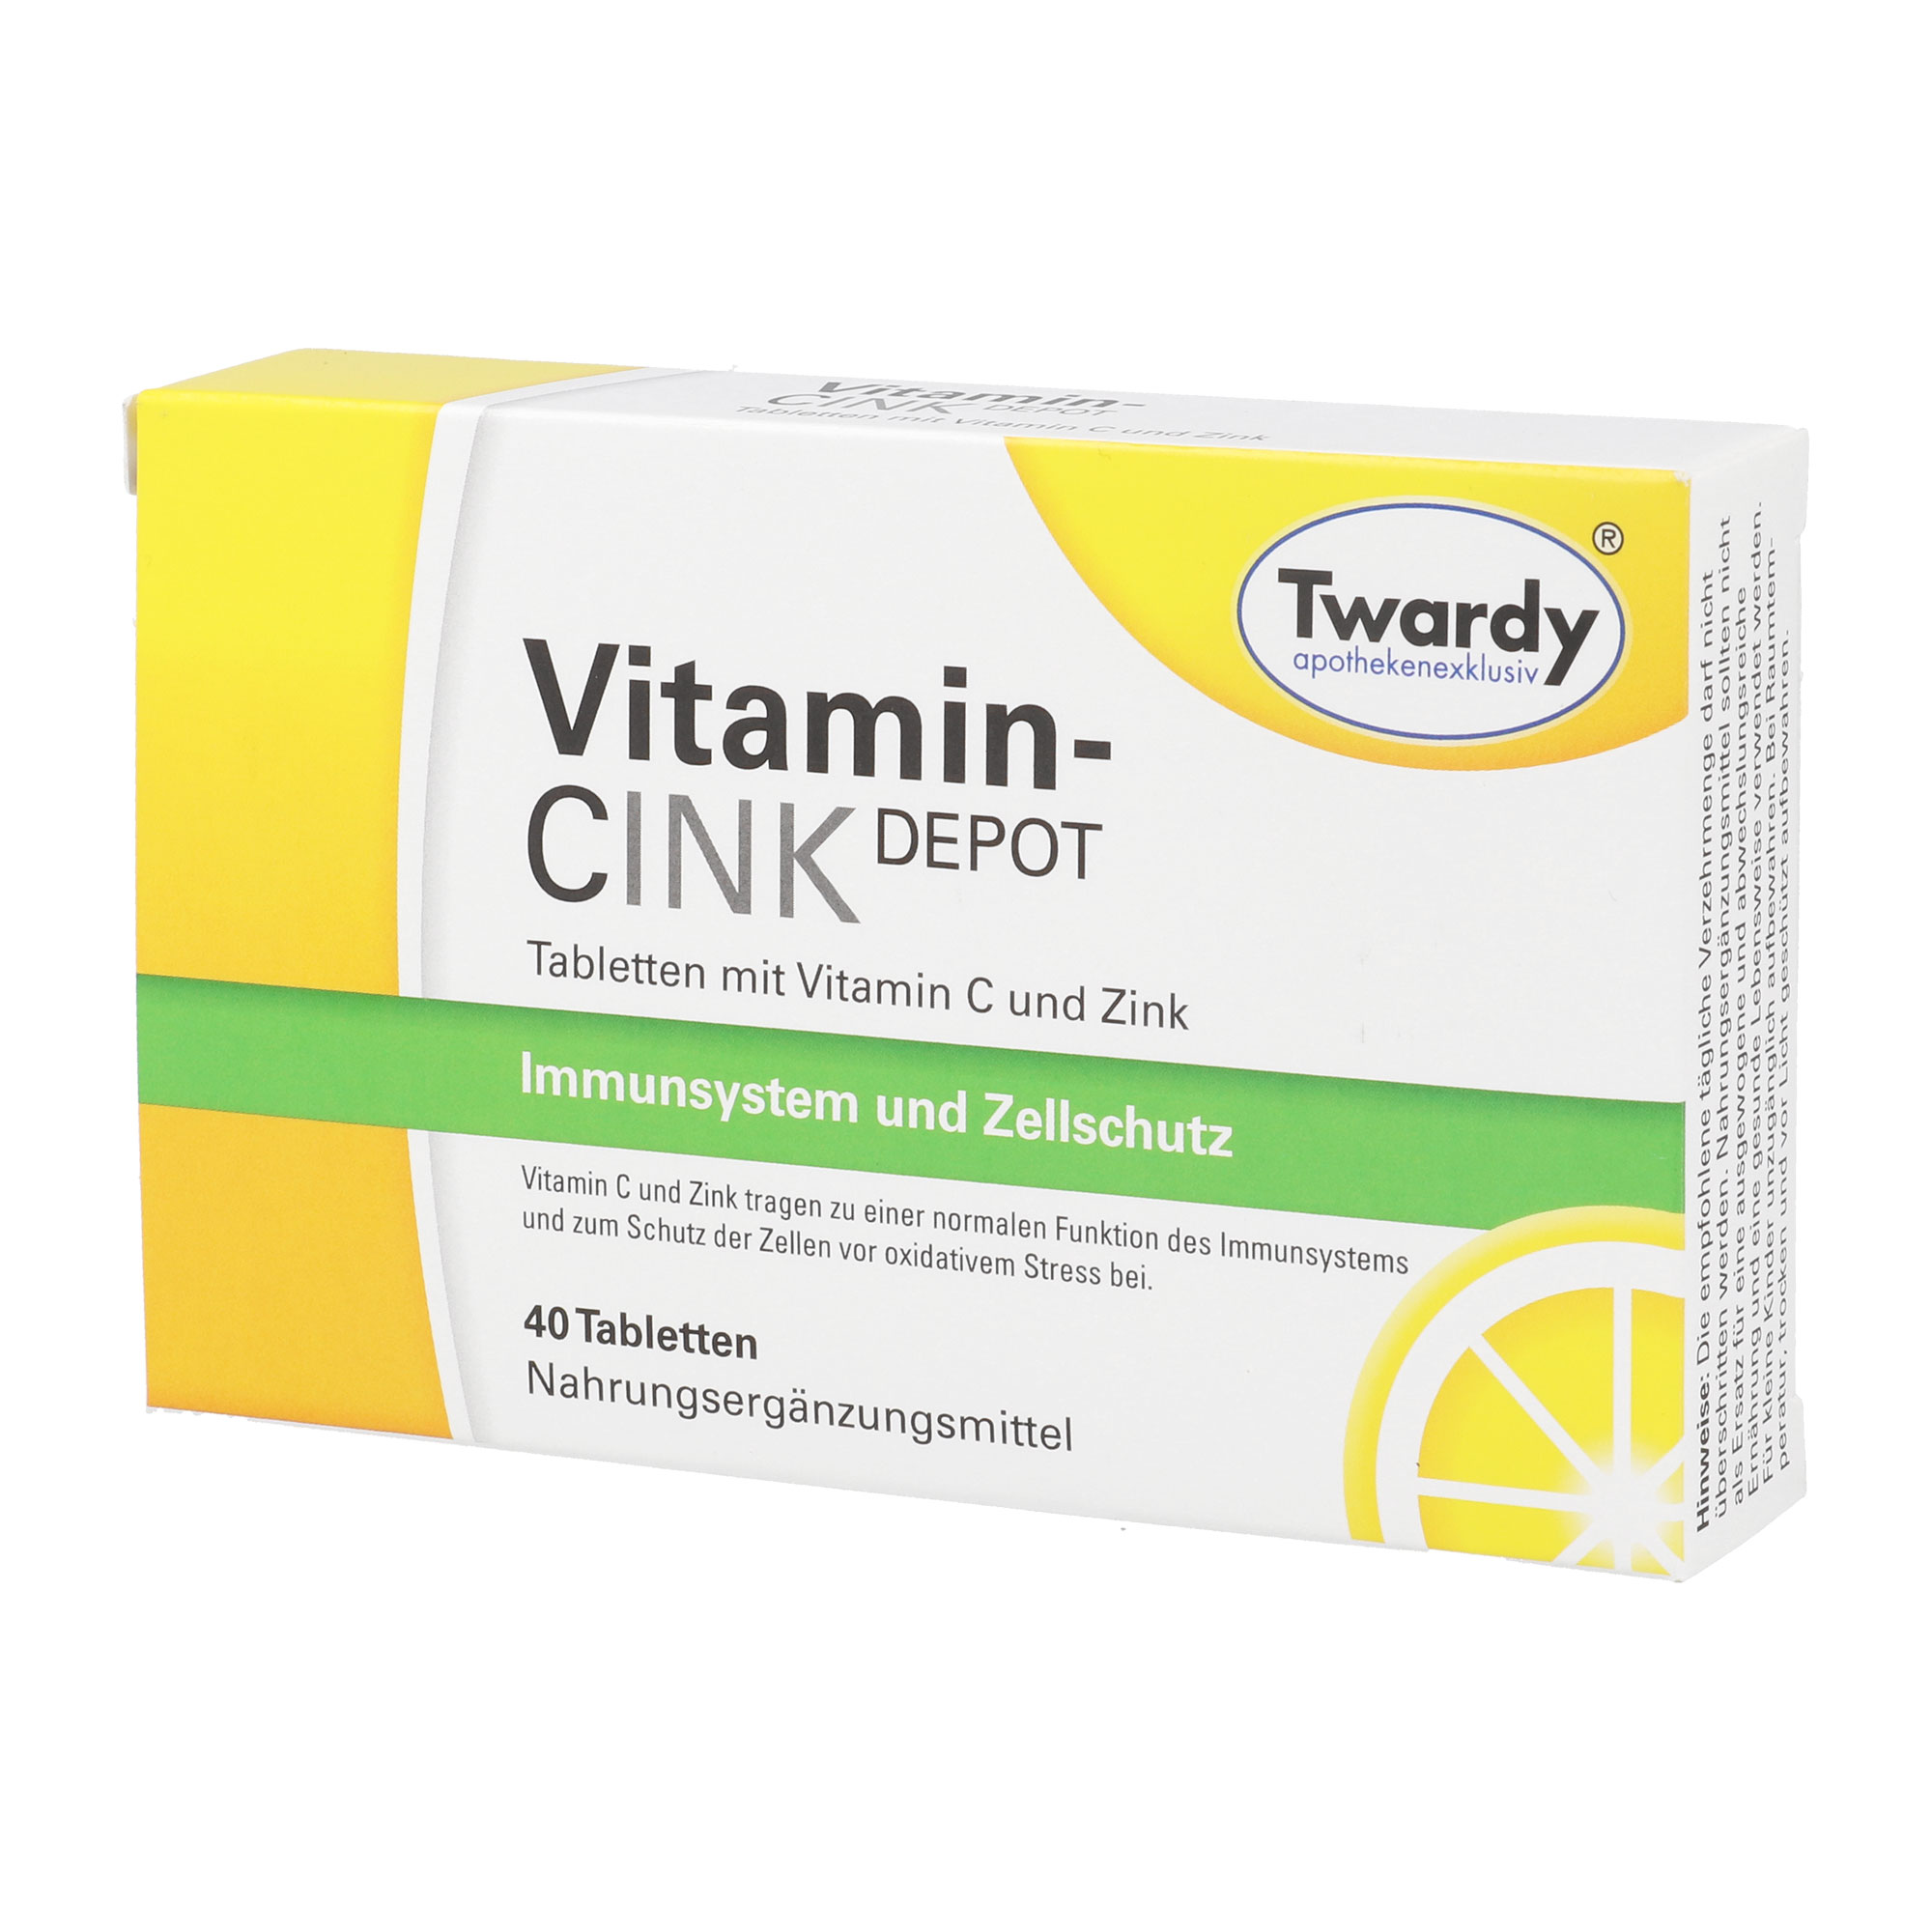 Nahrungsergänzungsmittel mit Vitamin C und Zink.